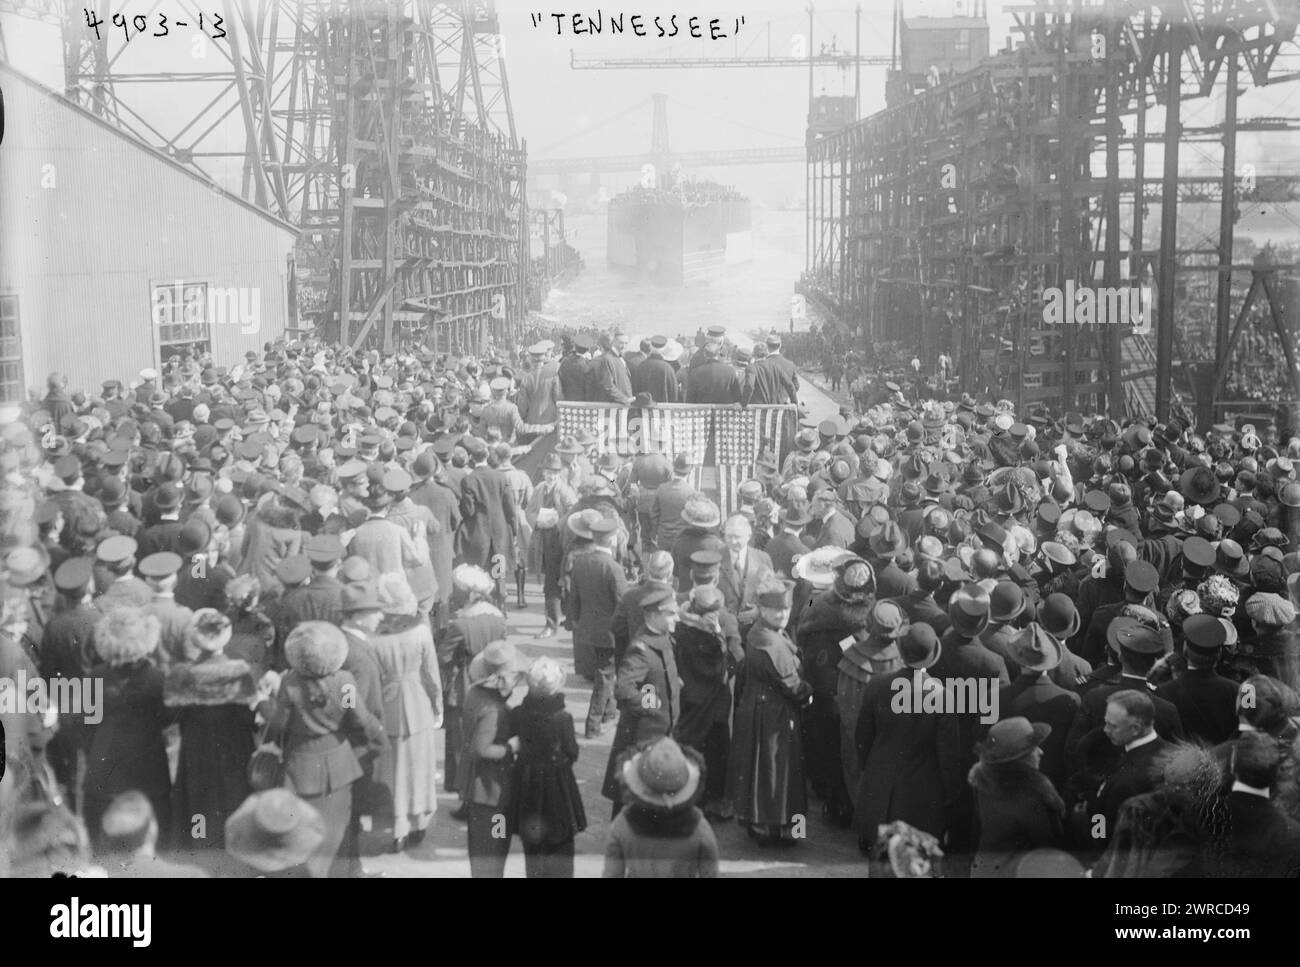 TENNESSEE, Foto zeigt eine Menschenmenge und die Startplattform in der Nähe des Schlachtschiffs USS Tennessee (BB-43), das am 30. April 1919 auf der Brooklyn Navy Yard gestartet wurde., 1919. April 30, Glass negative, 1 negative: Glass Stockfoto